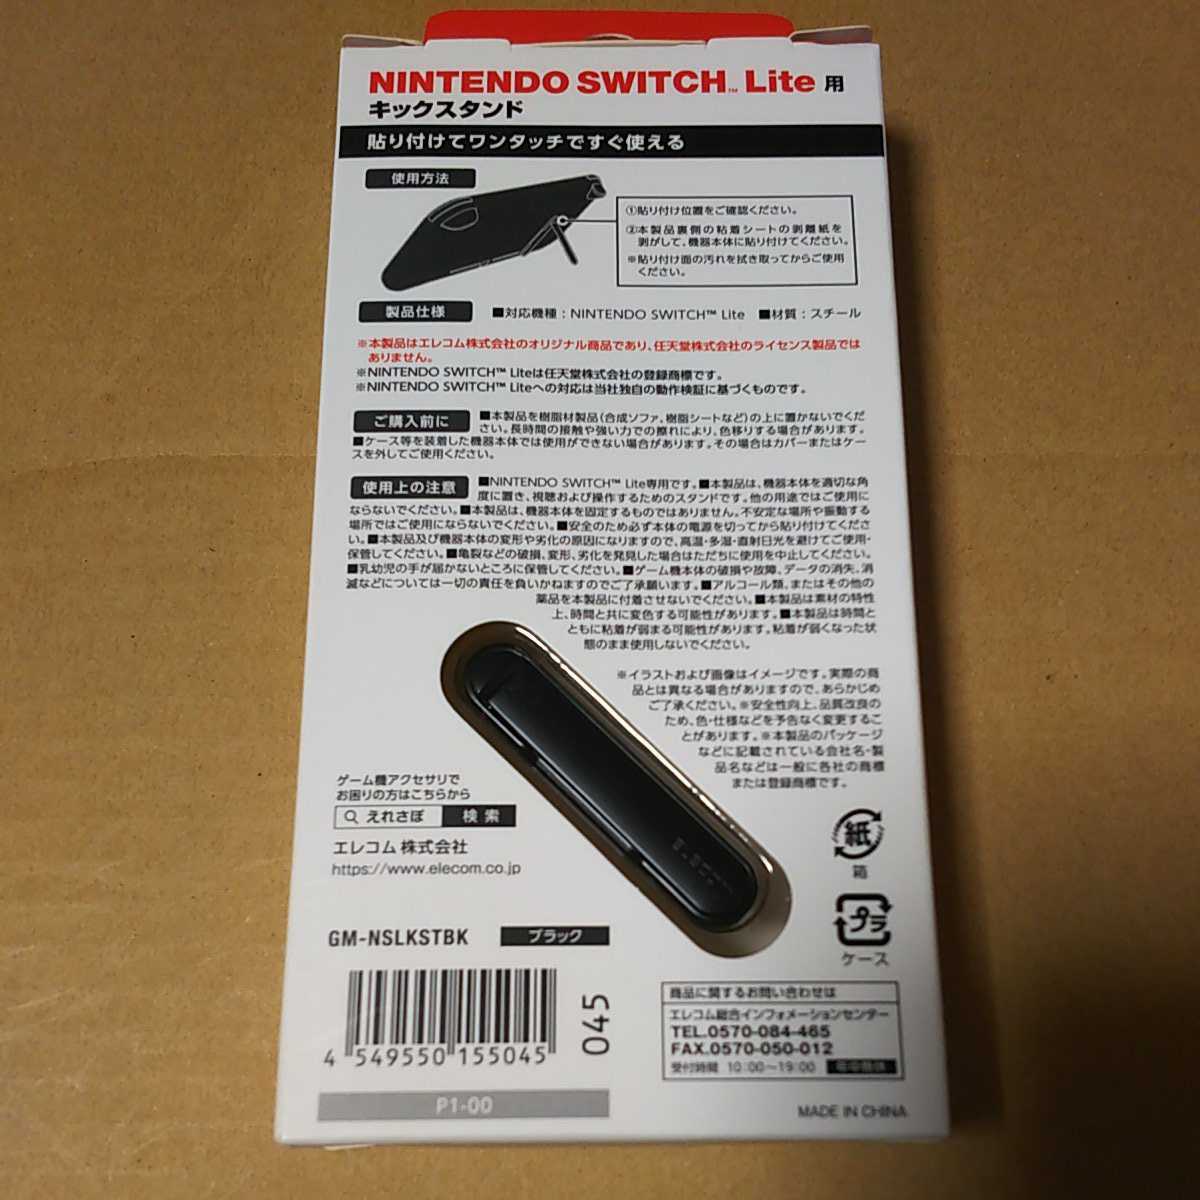 ◇ELECOM Nintendo Switch Lite 用 キックスタンド ニンテンドー スイッチ ライト スタンド ブラック ブラック GM-NSLKSTBK